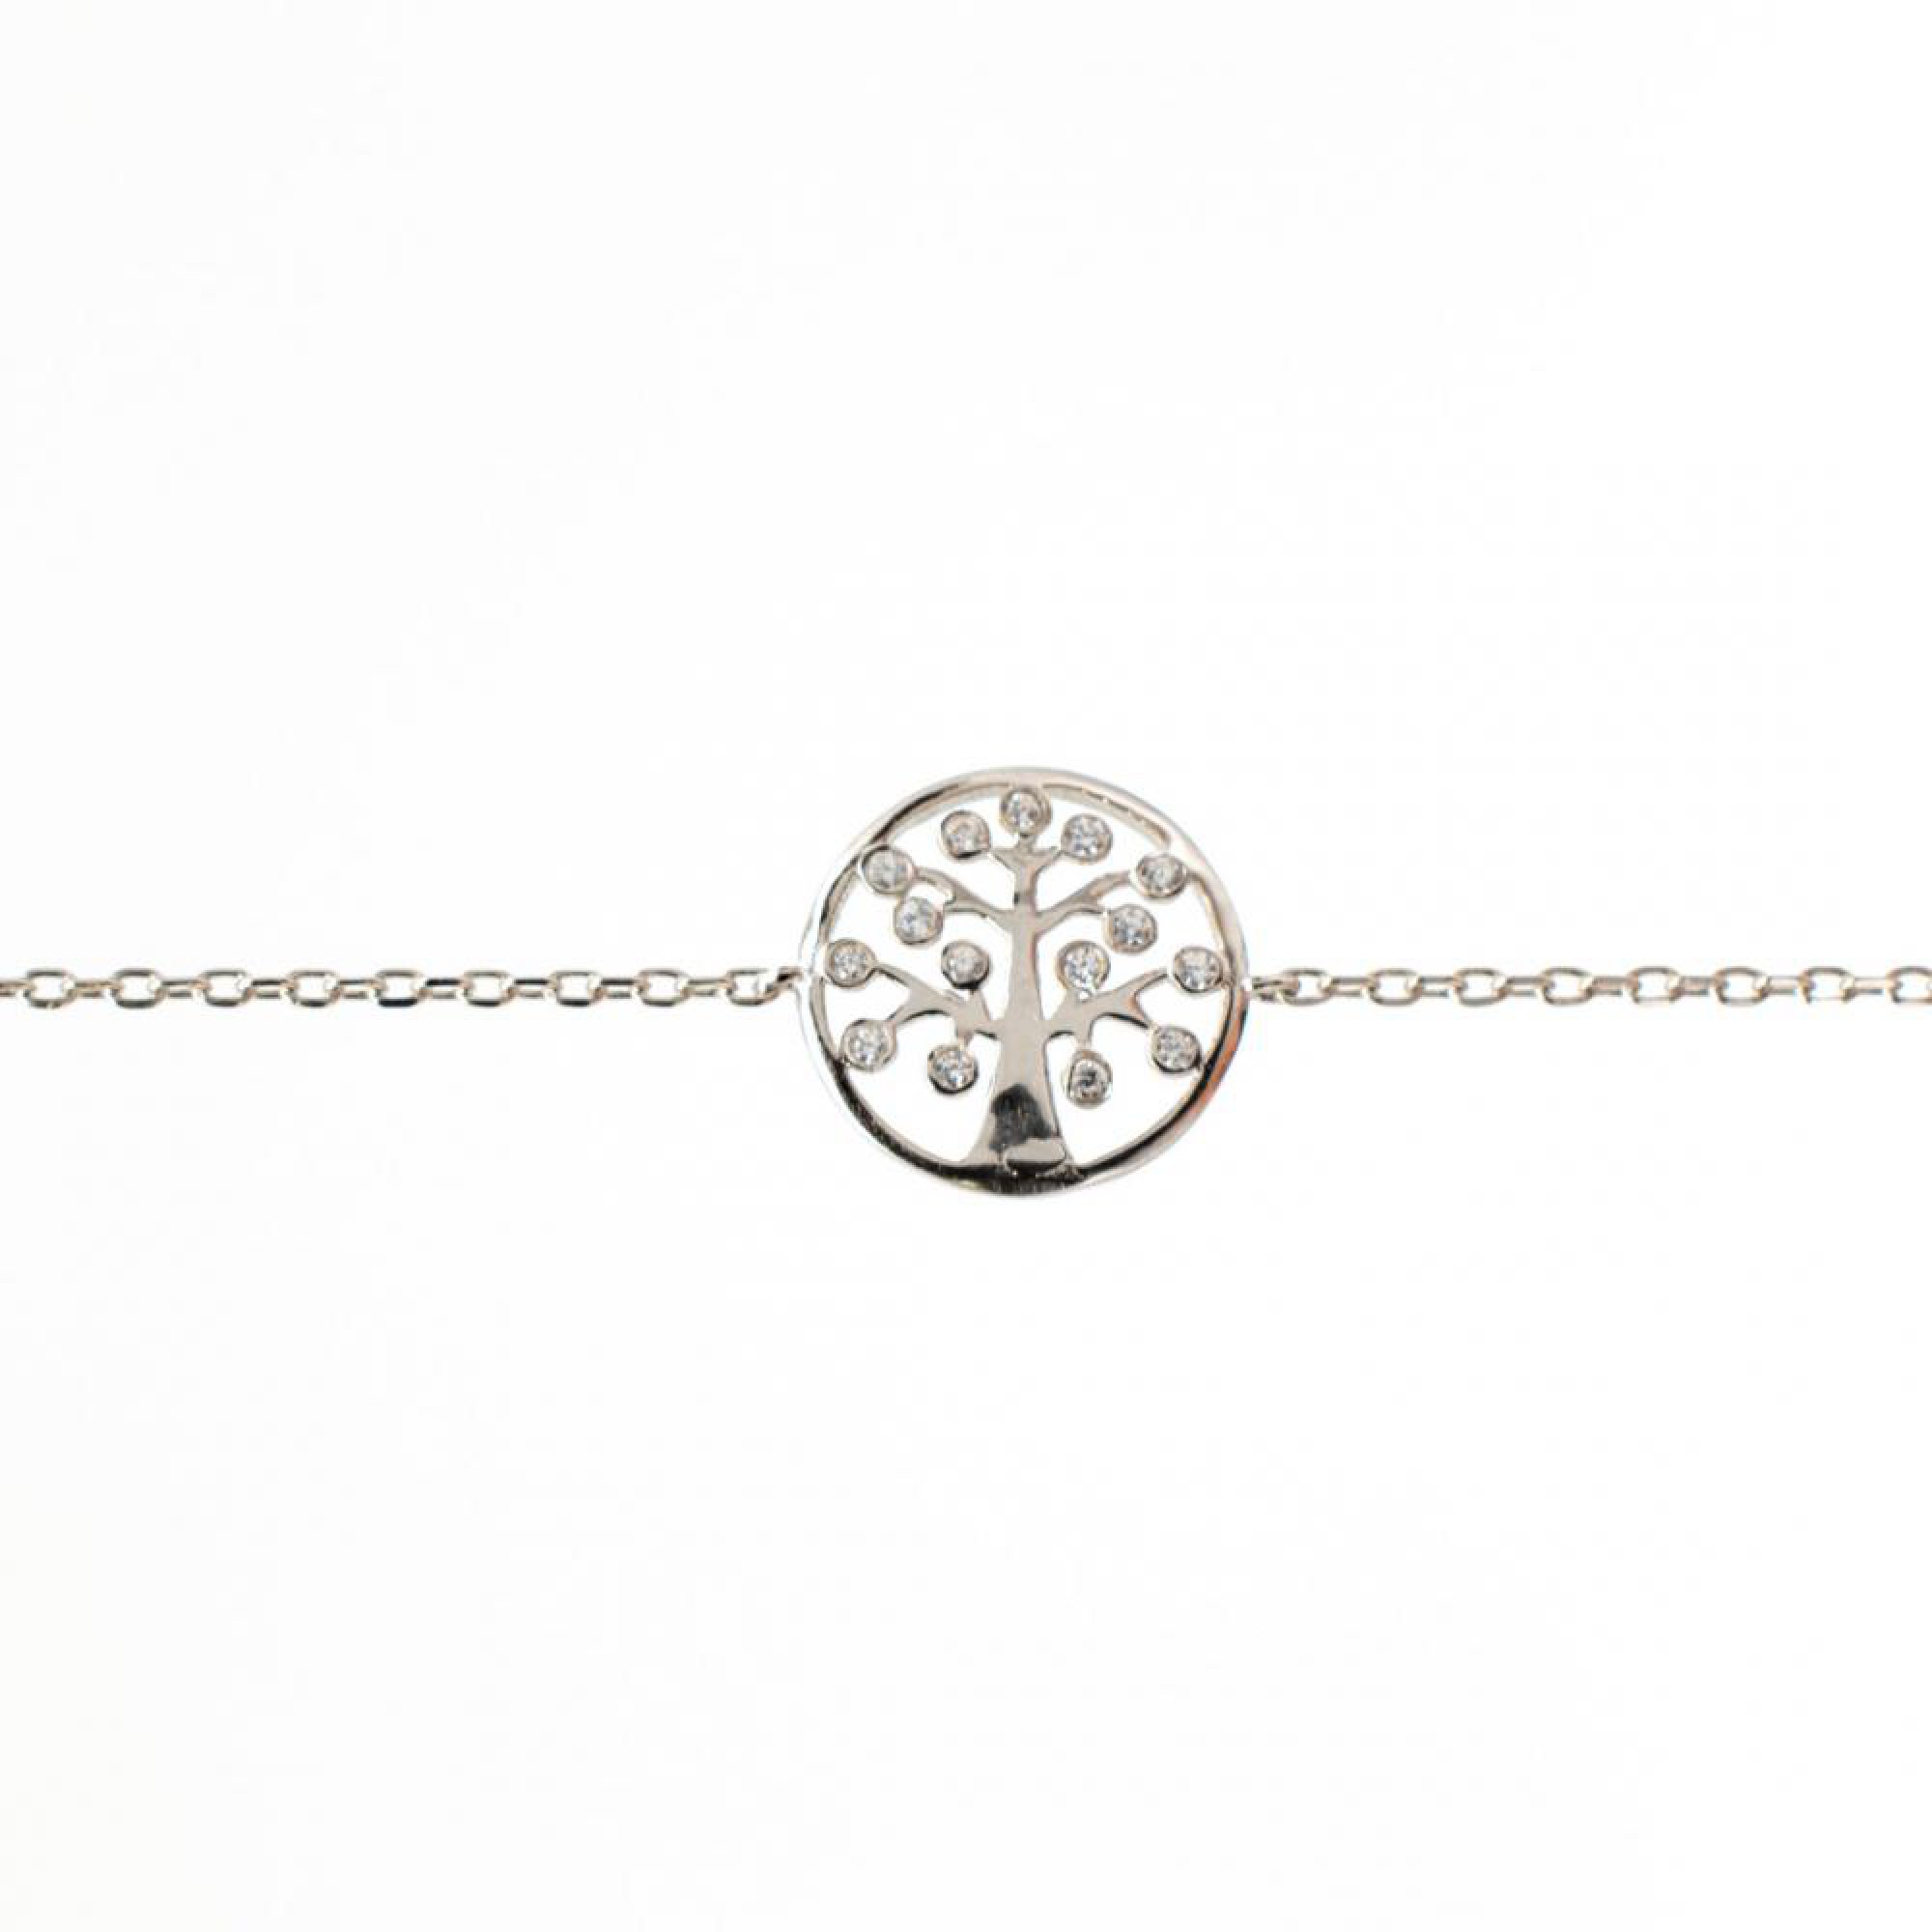 Tree of life bracelet with zircon stones